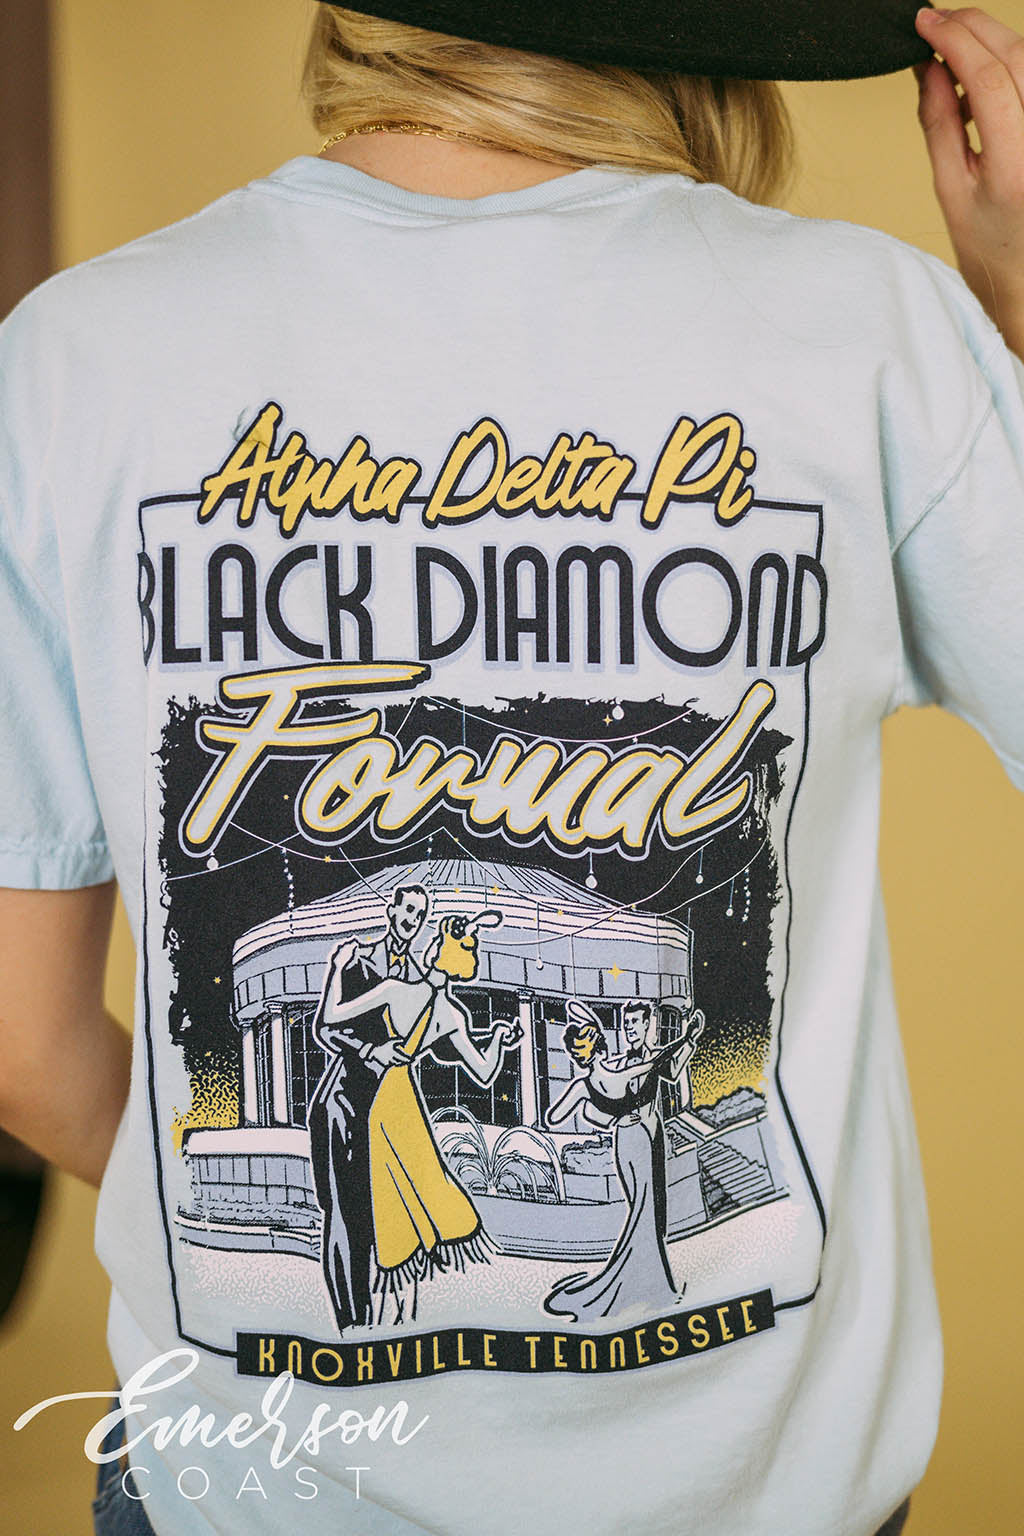 Alpha Delta Pi Black Diamond Formal Tee